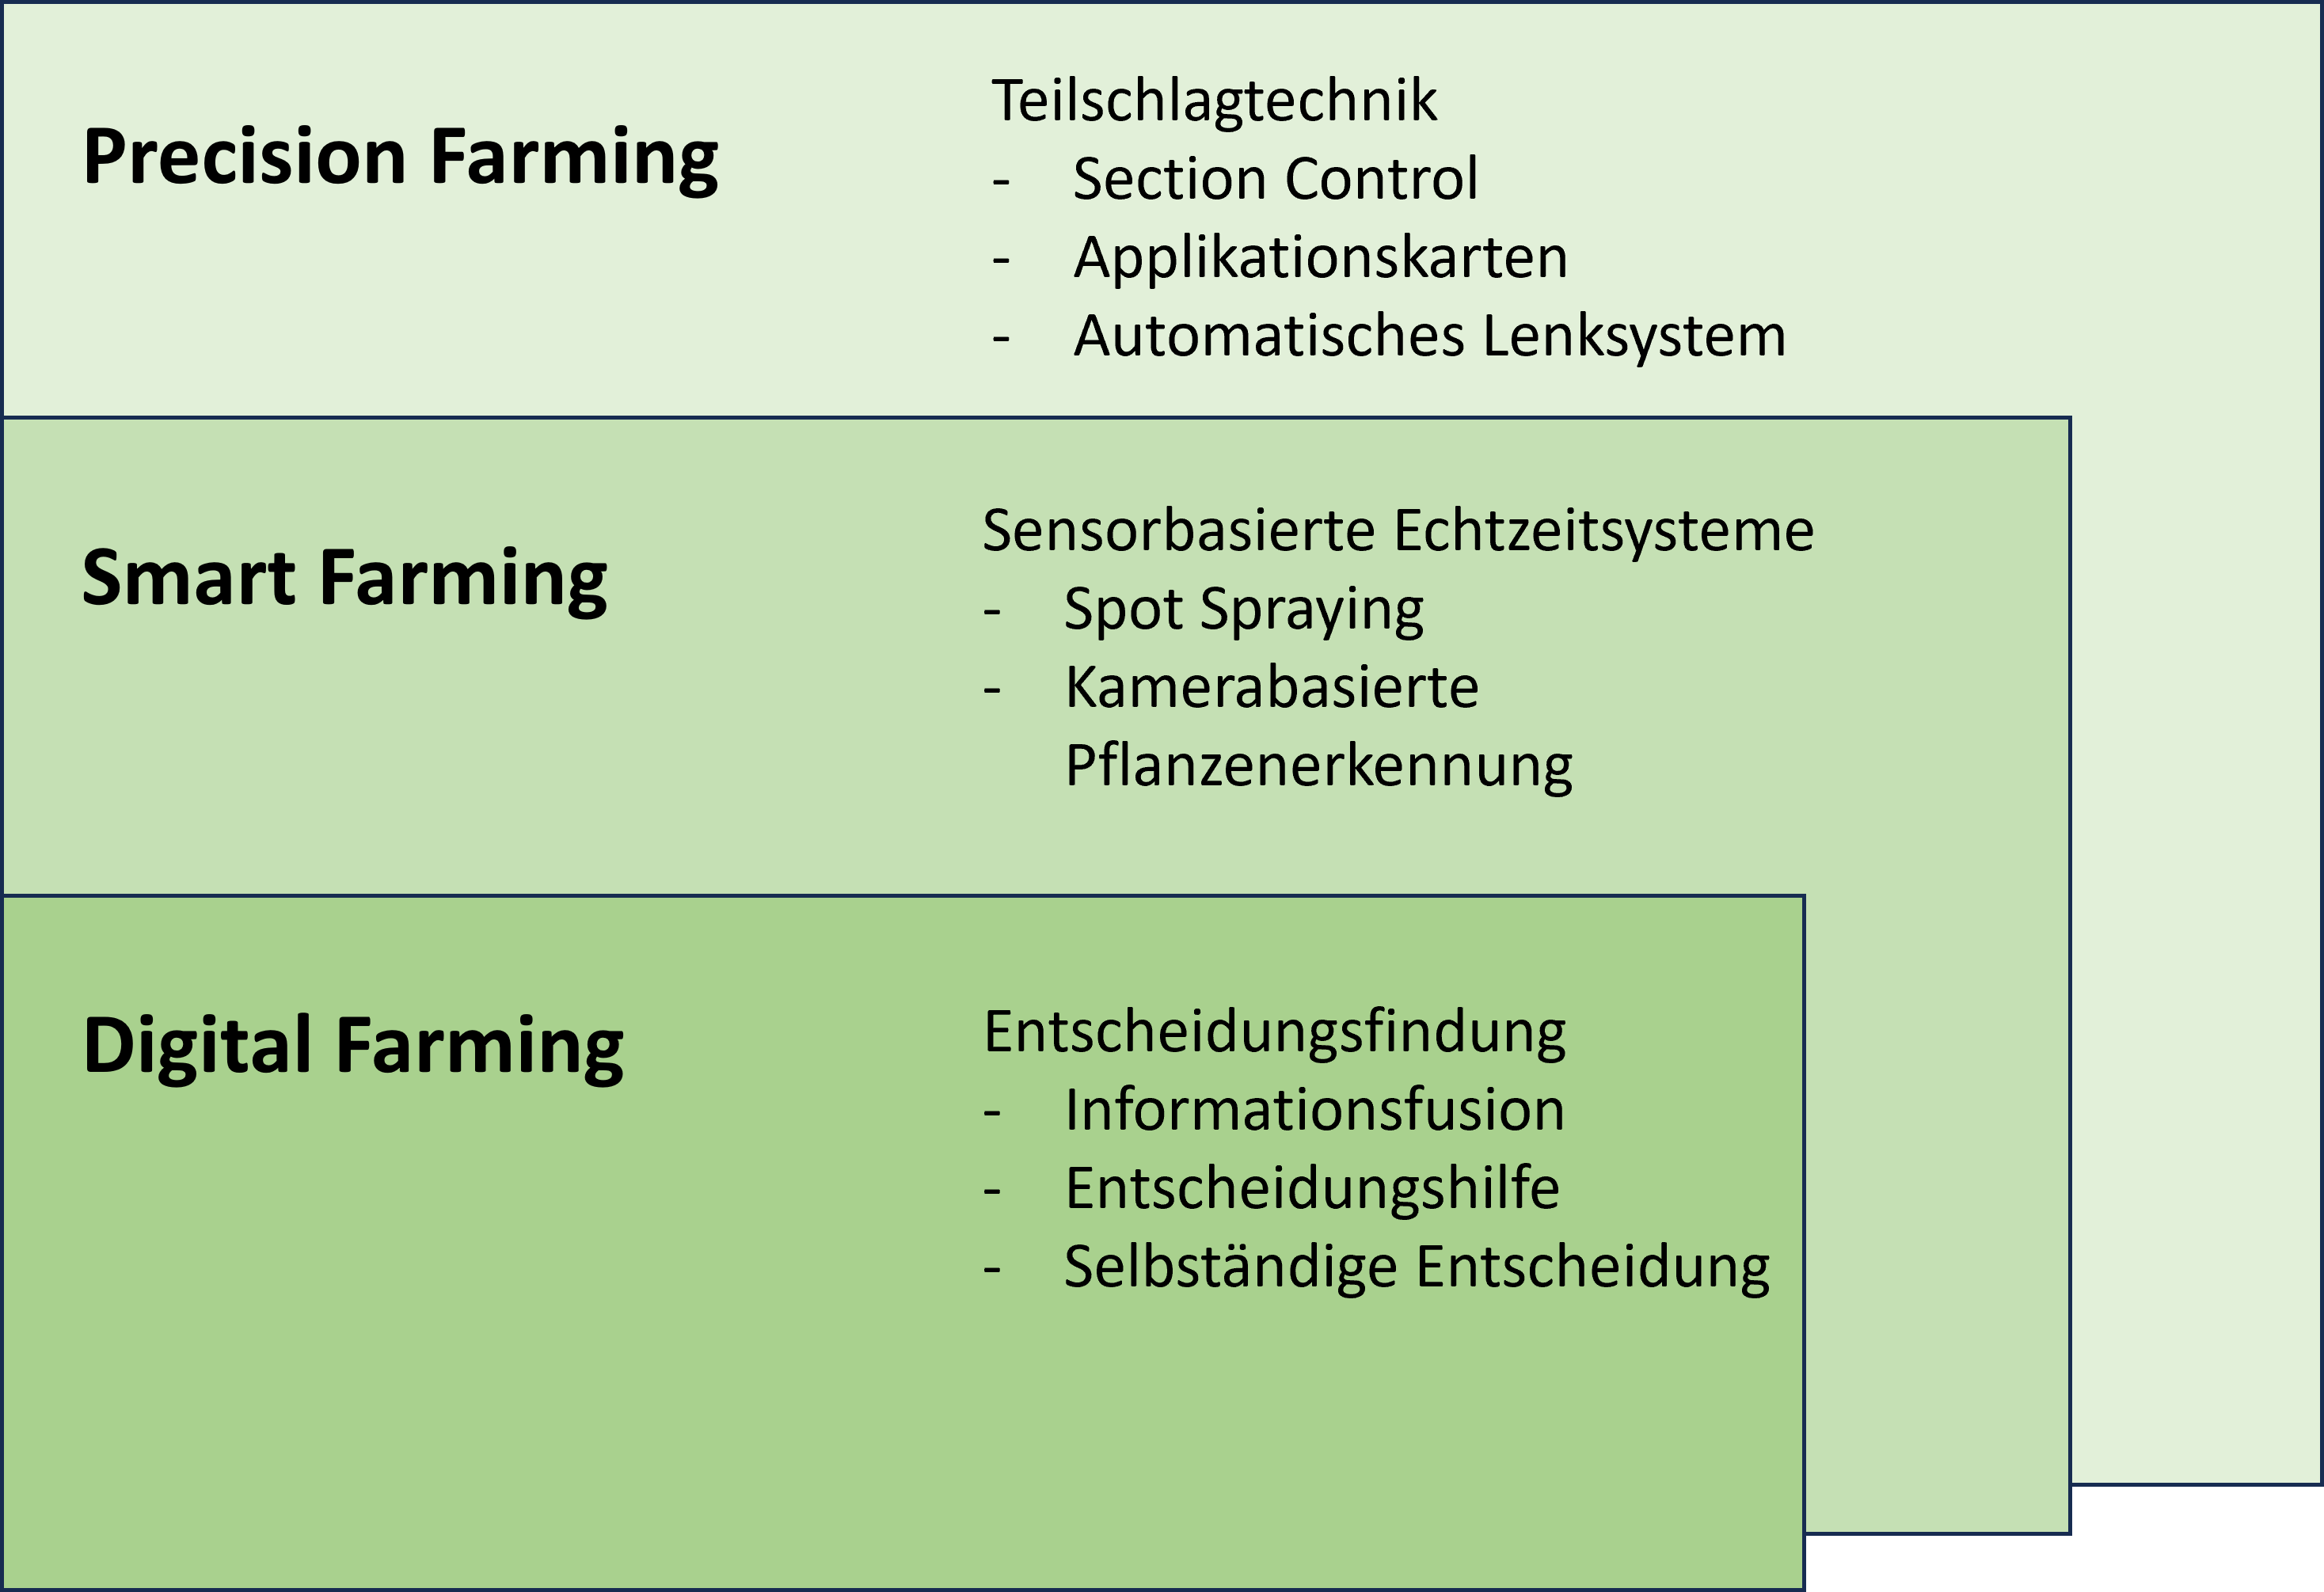 Grafik, die die Abgrenzung von Precision Farming zu Smart Farming und Digital Farming zeigt